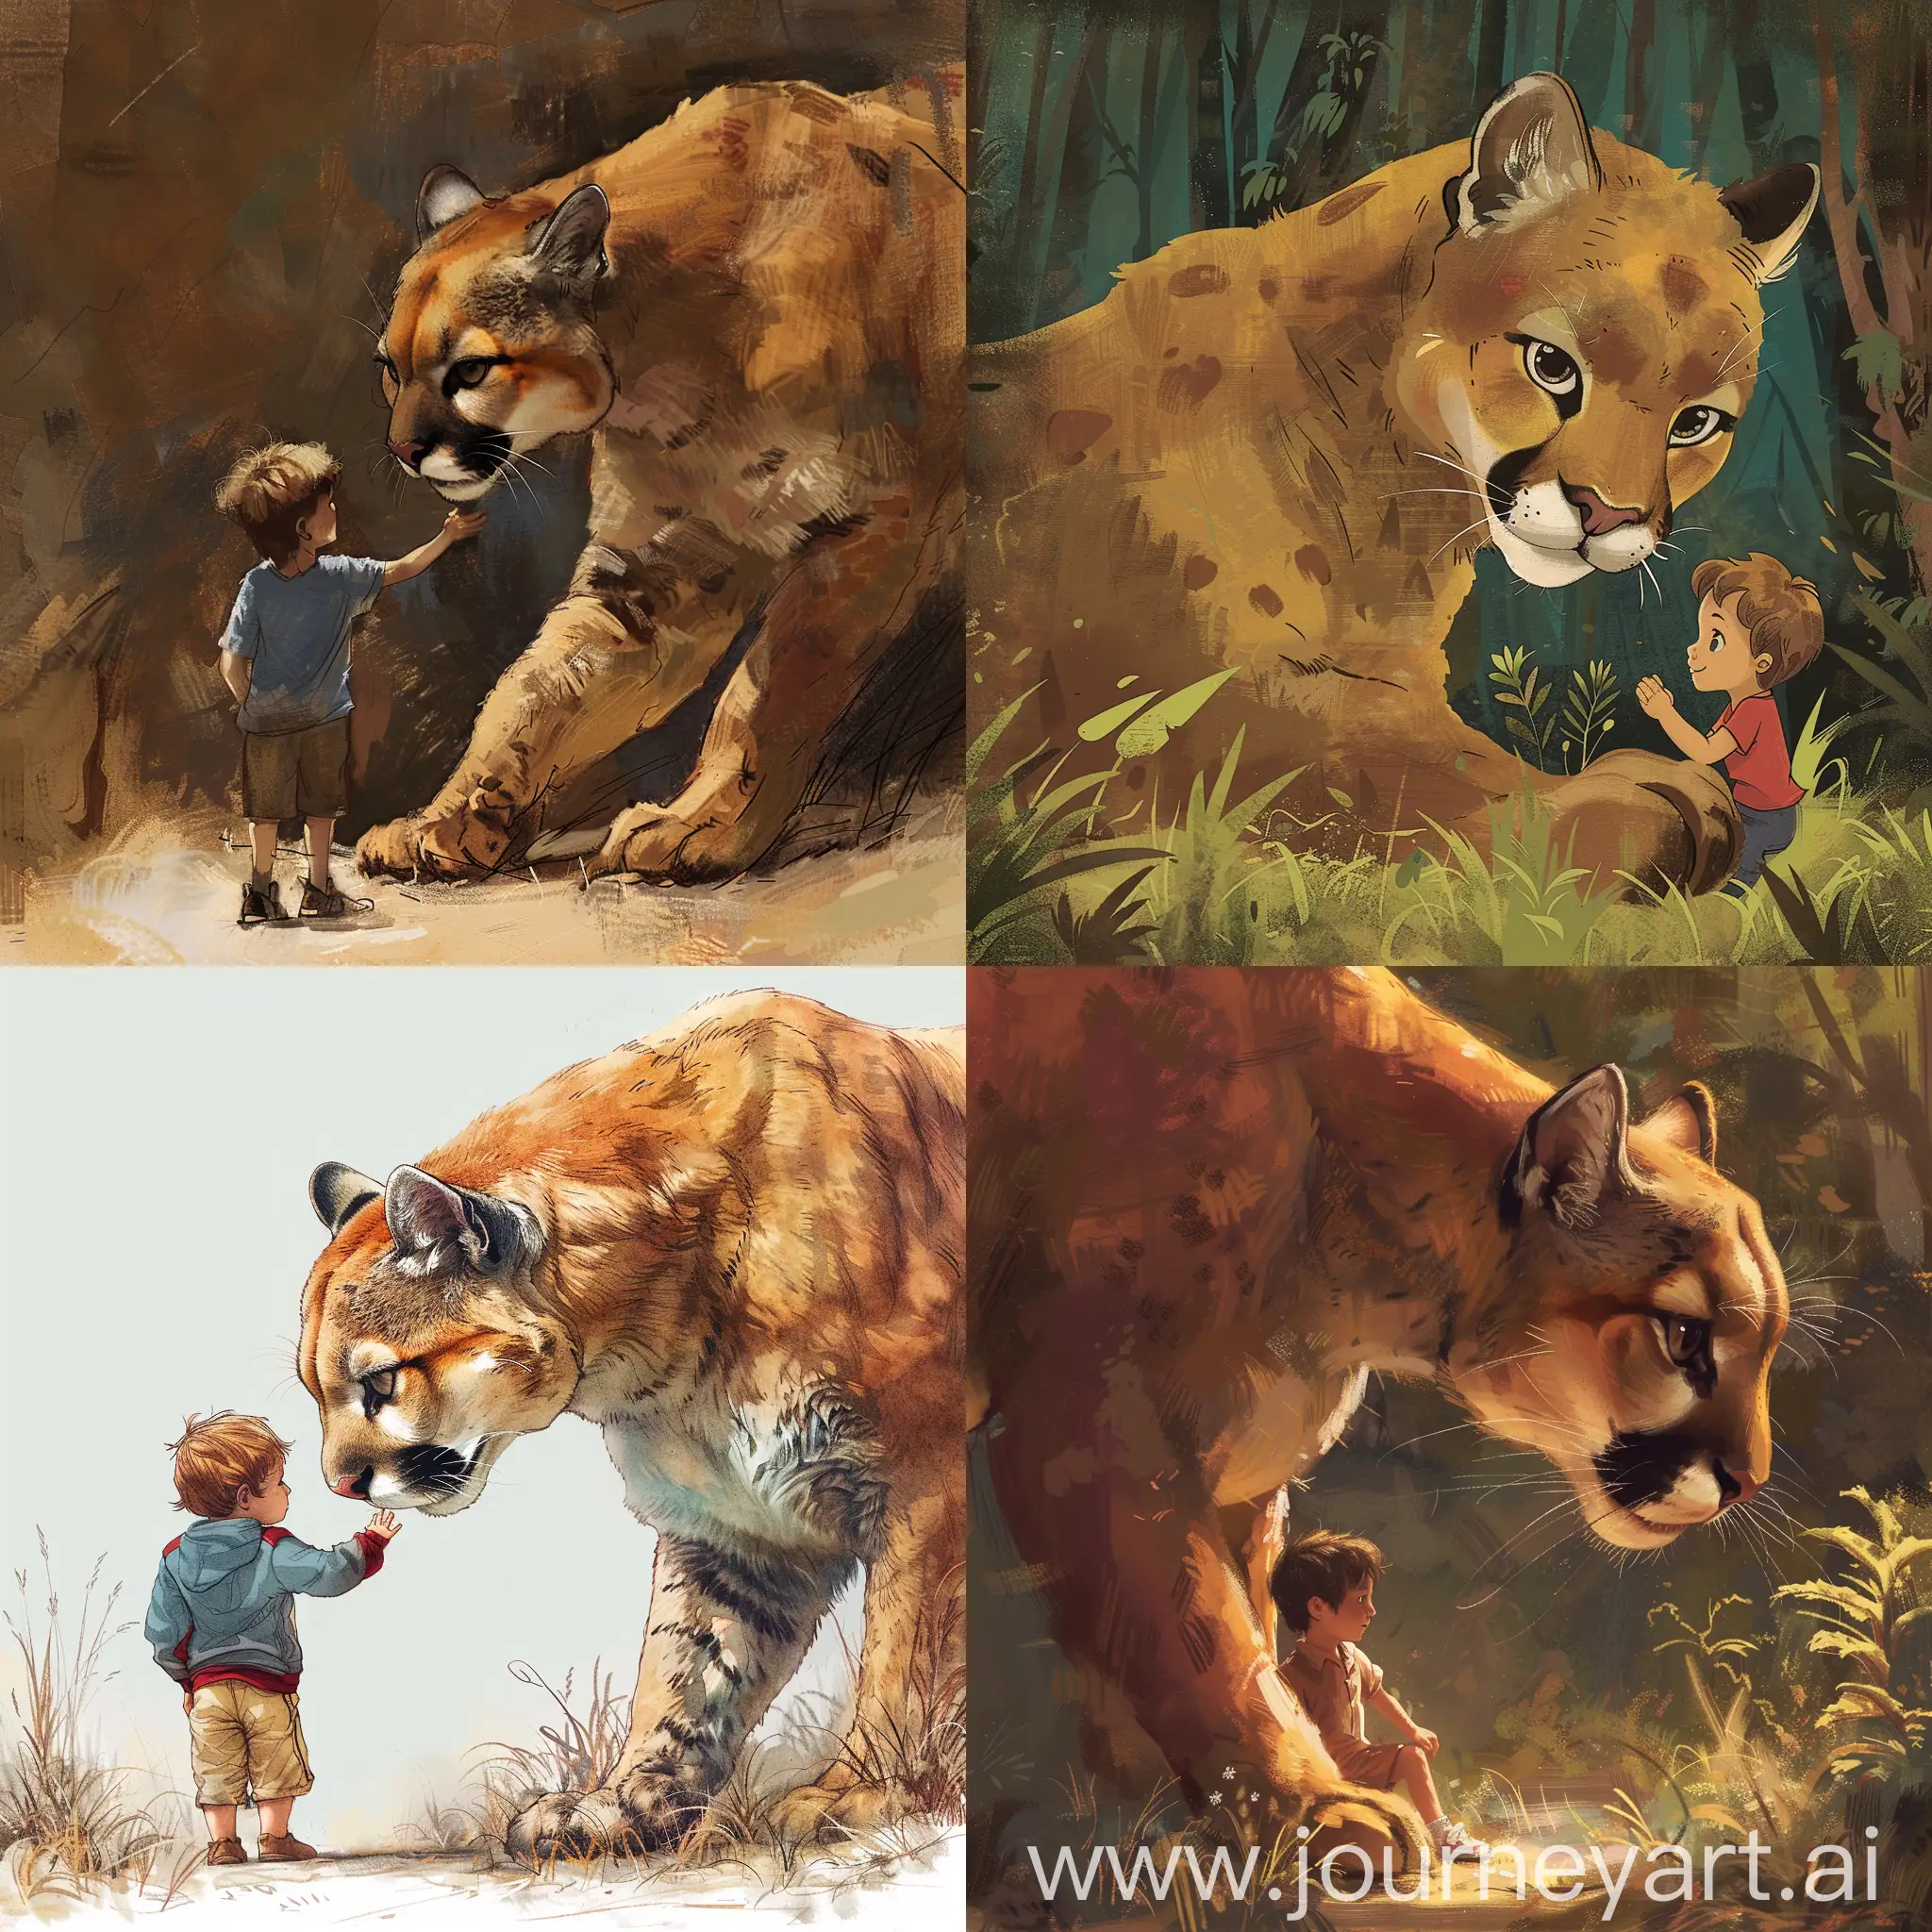 Erstelle ein Bild von einem Puma und einem kleinen Jungen. Sie sind befreundet.